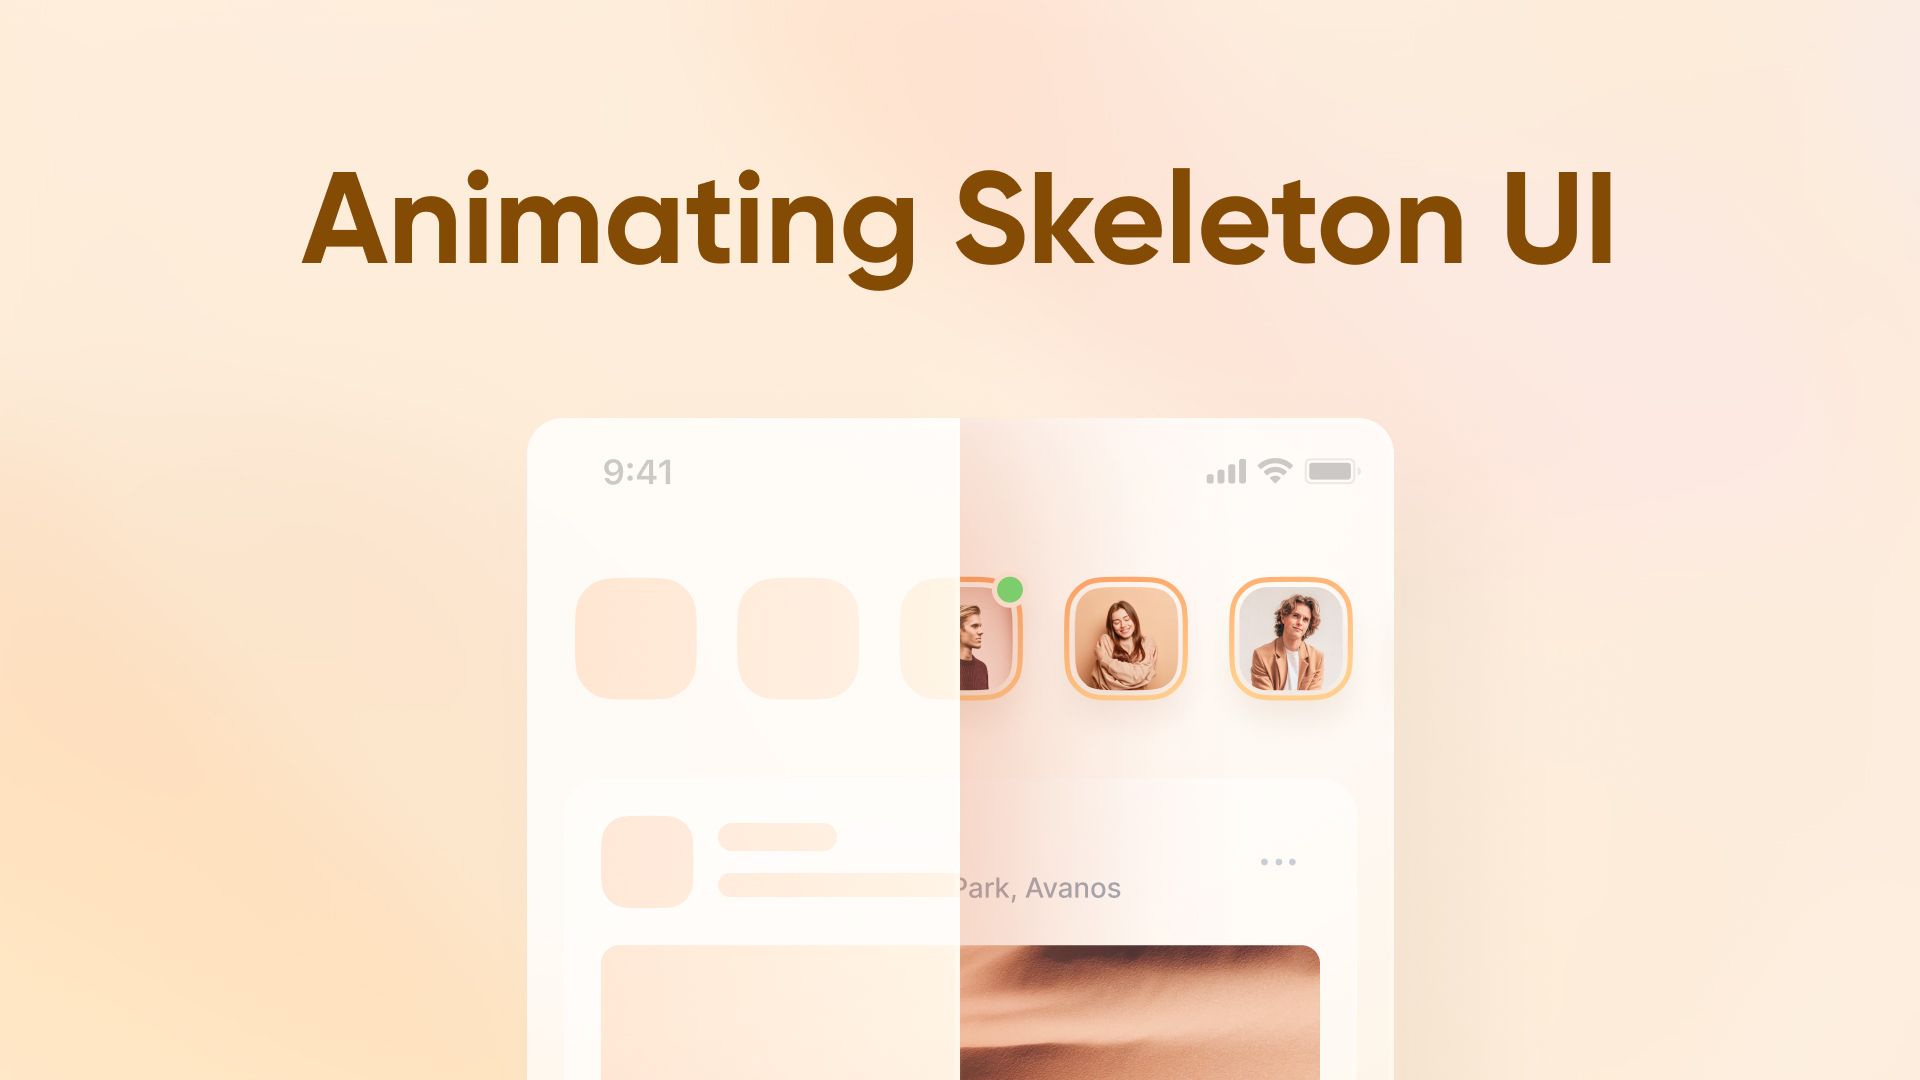 Animating skeleton UI thumbnail